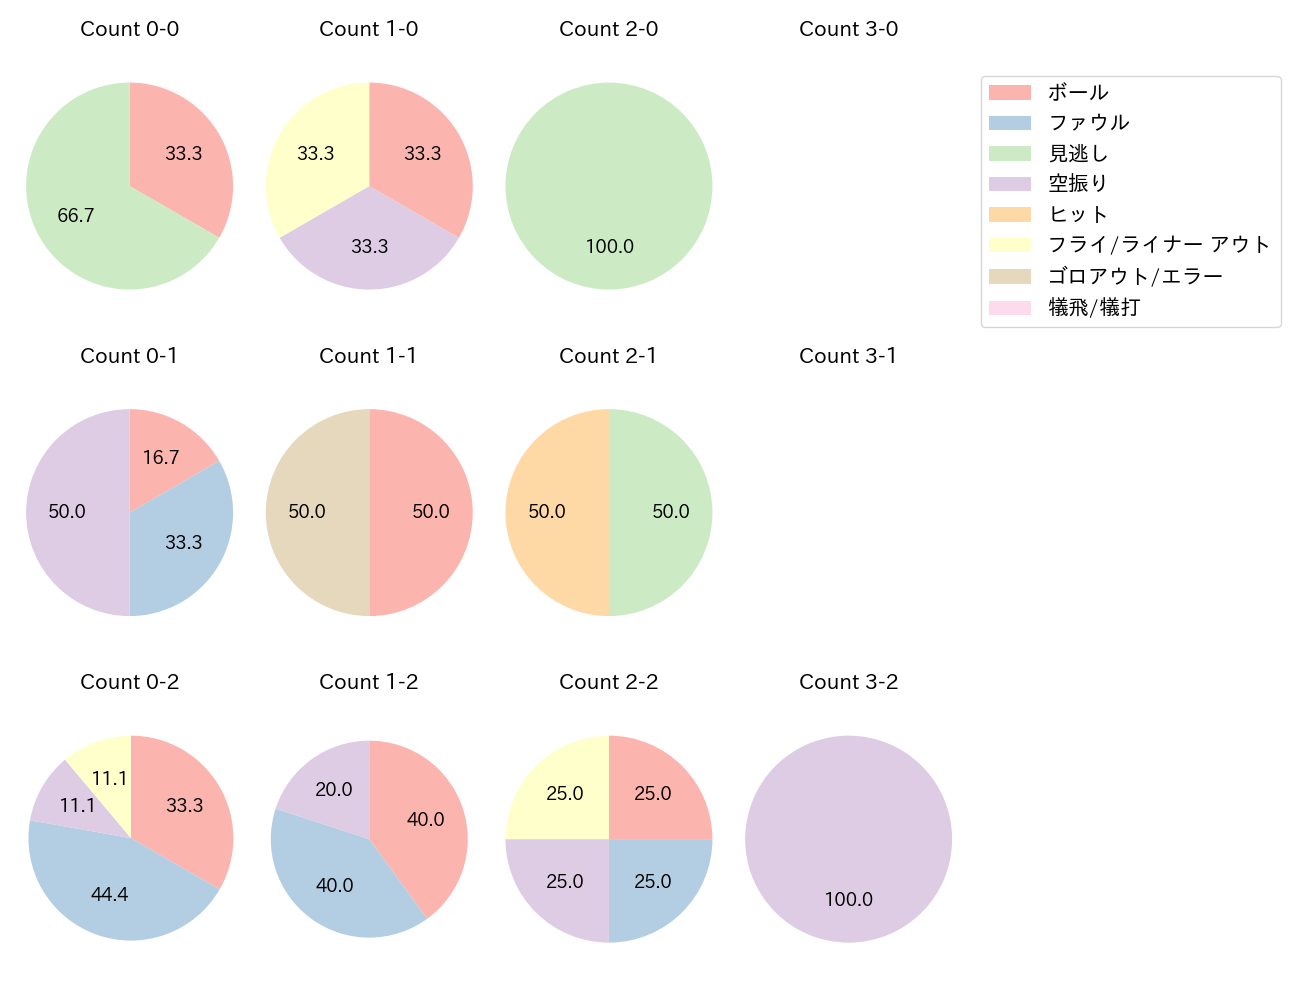 髙田 知季の球数分布(2022年8月)